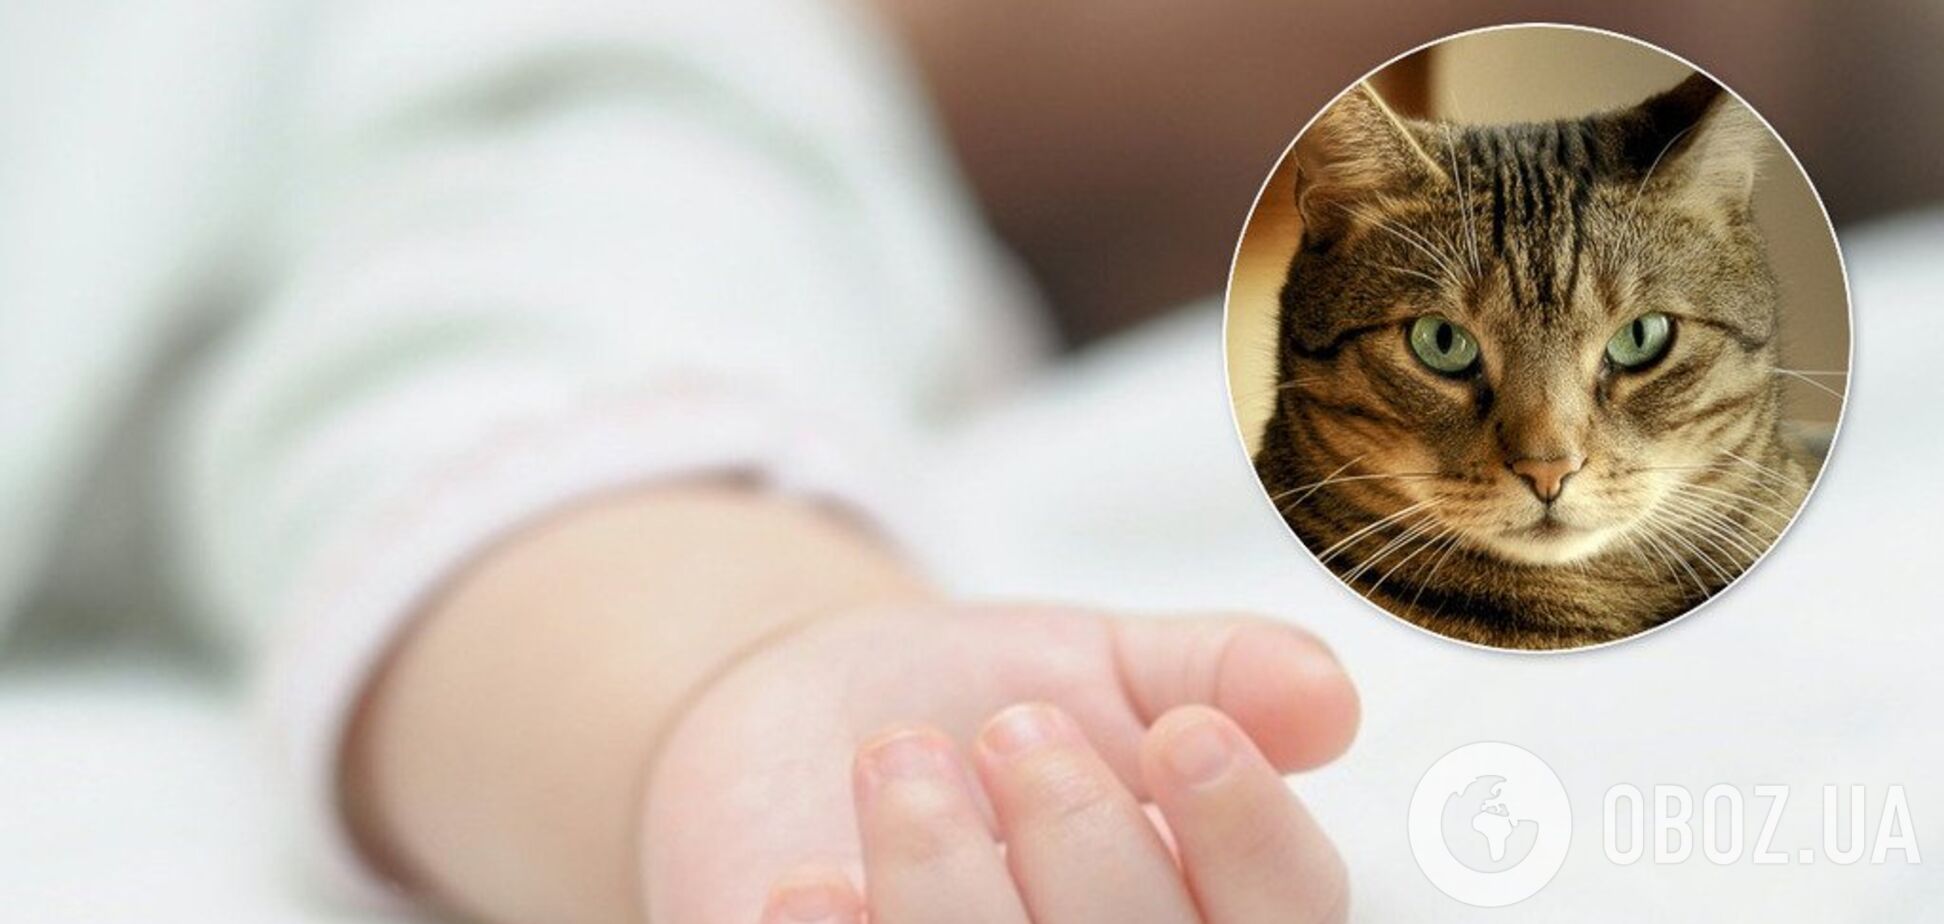 На Винниччине кот случайно задушил 9-месячного ребенка